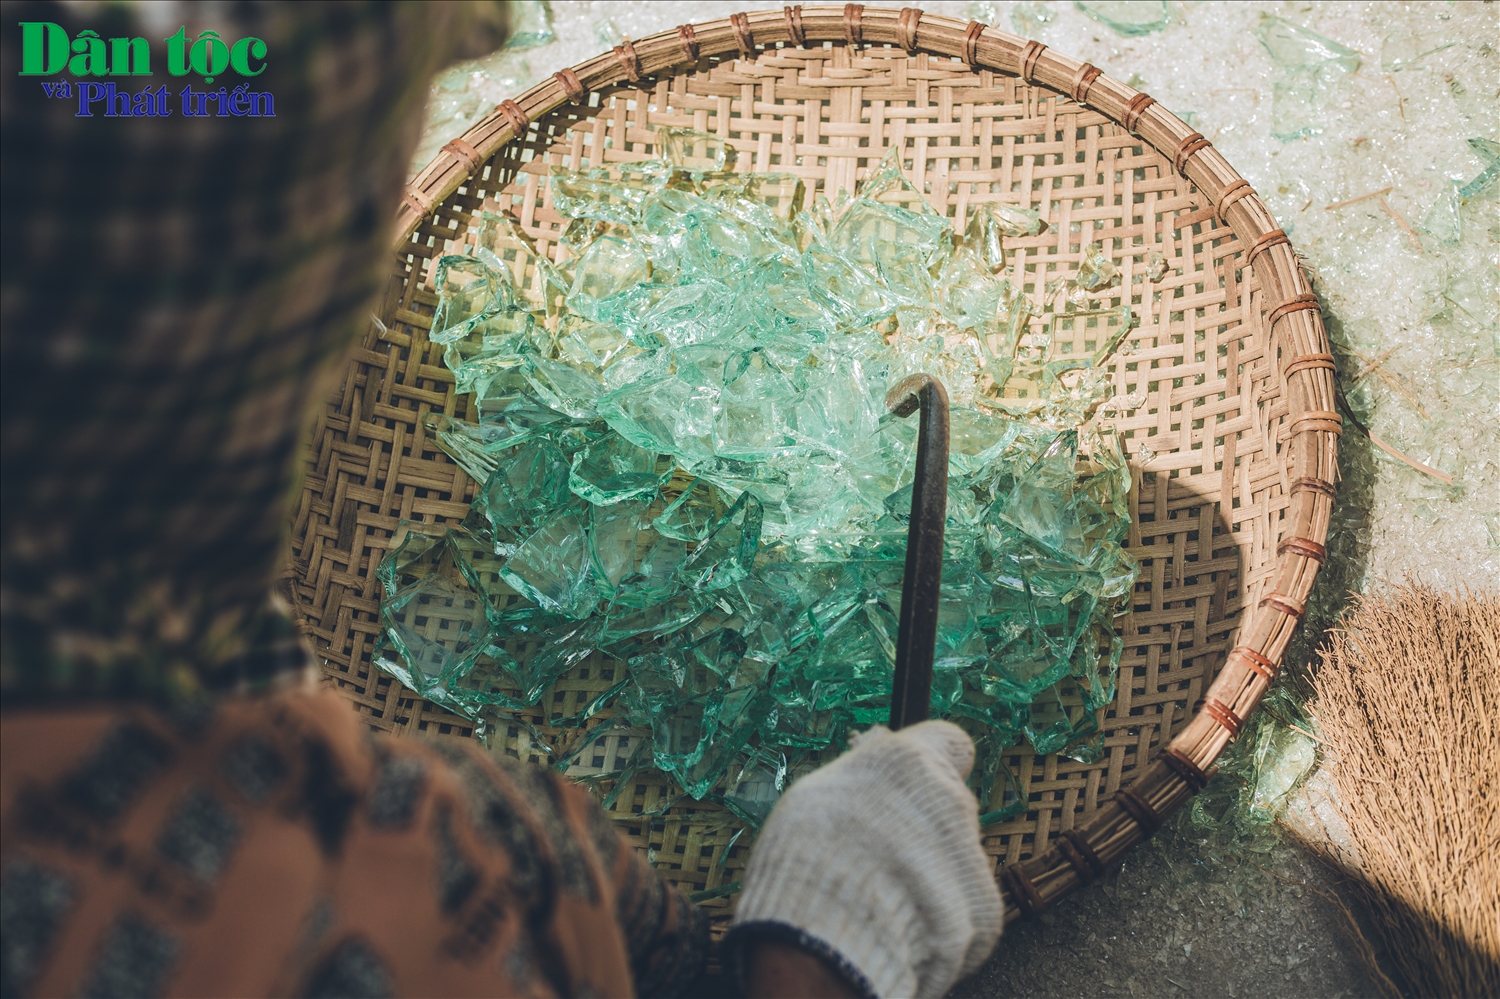 Quy trình làm nghề thổi thủy tinh trải qua nhiều công đoạn. Đầu tiên là việc chọn nguyên liệu, các mảnh thủy tinh phải đảm bảo không bám bẩn và được phân loại theo màu xanh, trắng khác nhau. 